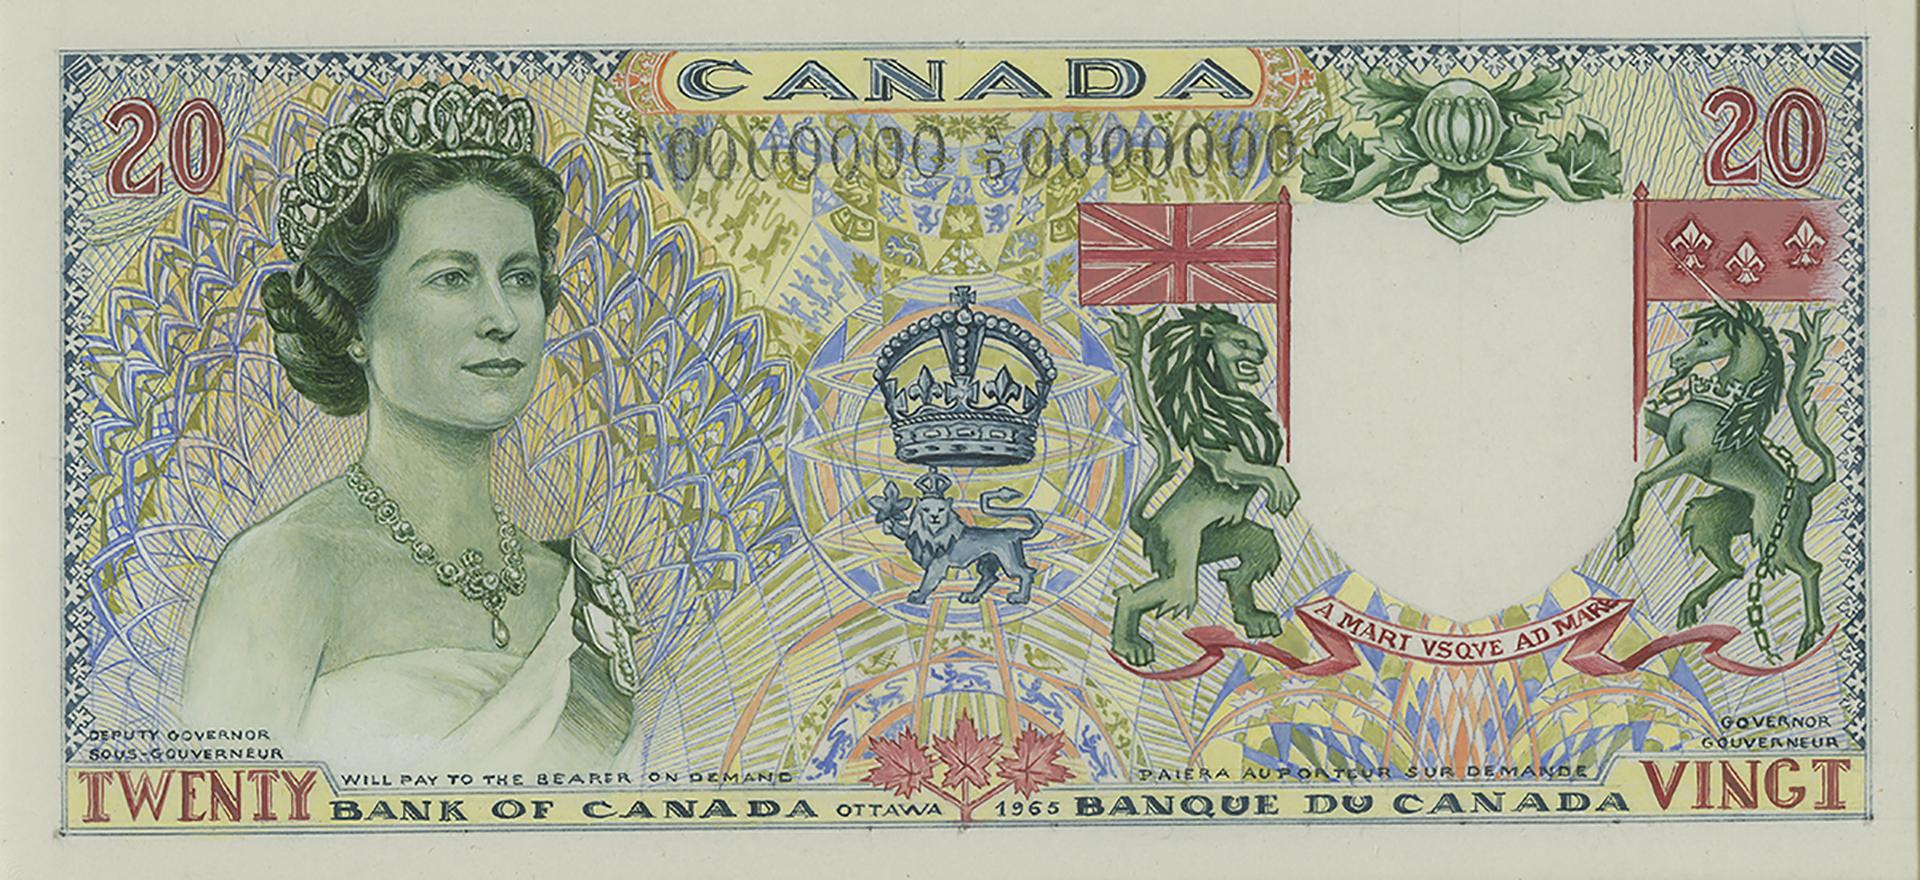 Diaporama de dix modèles de billets de banque dessinés à la main et aux illustrations différentes.